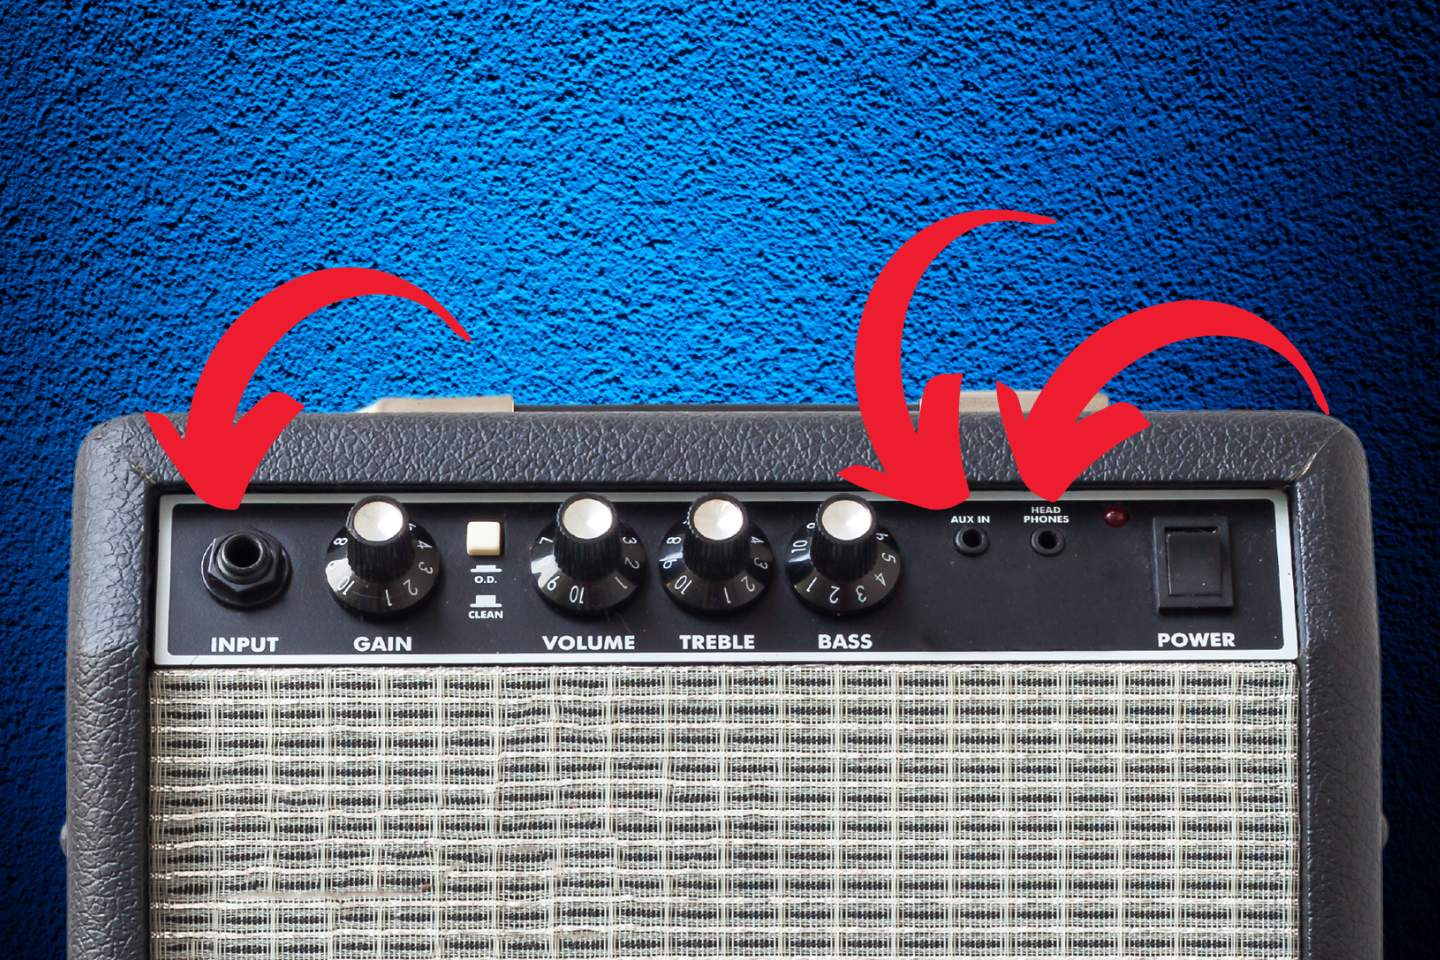 Um amplificador de guitarra dispõe de duas entradas, sendo uma de input e outra auxiliar, além de uma saída para fones de ouvido